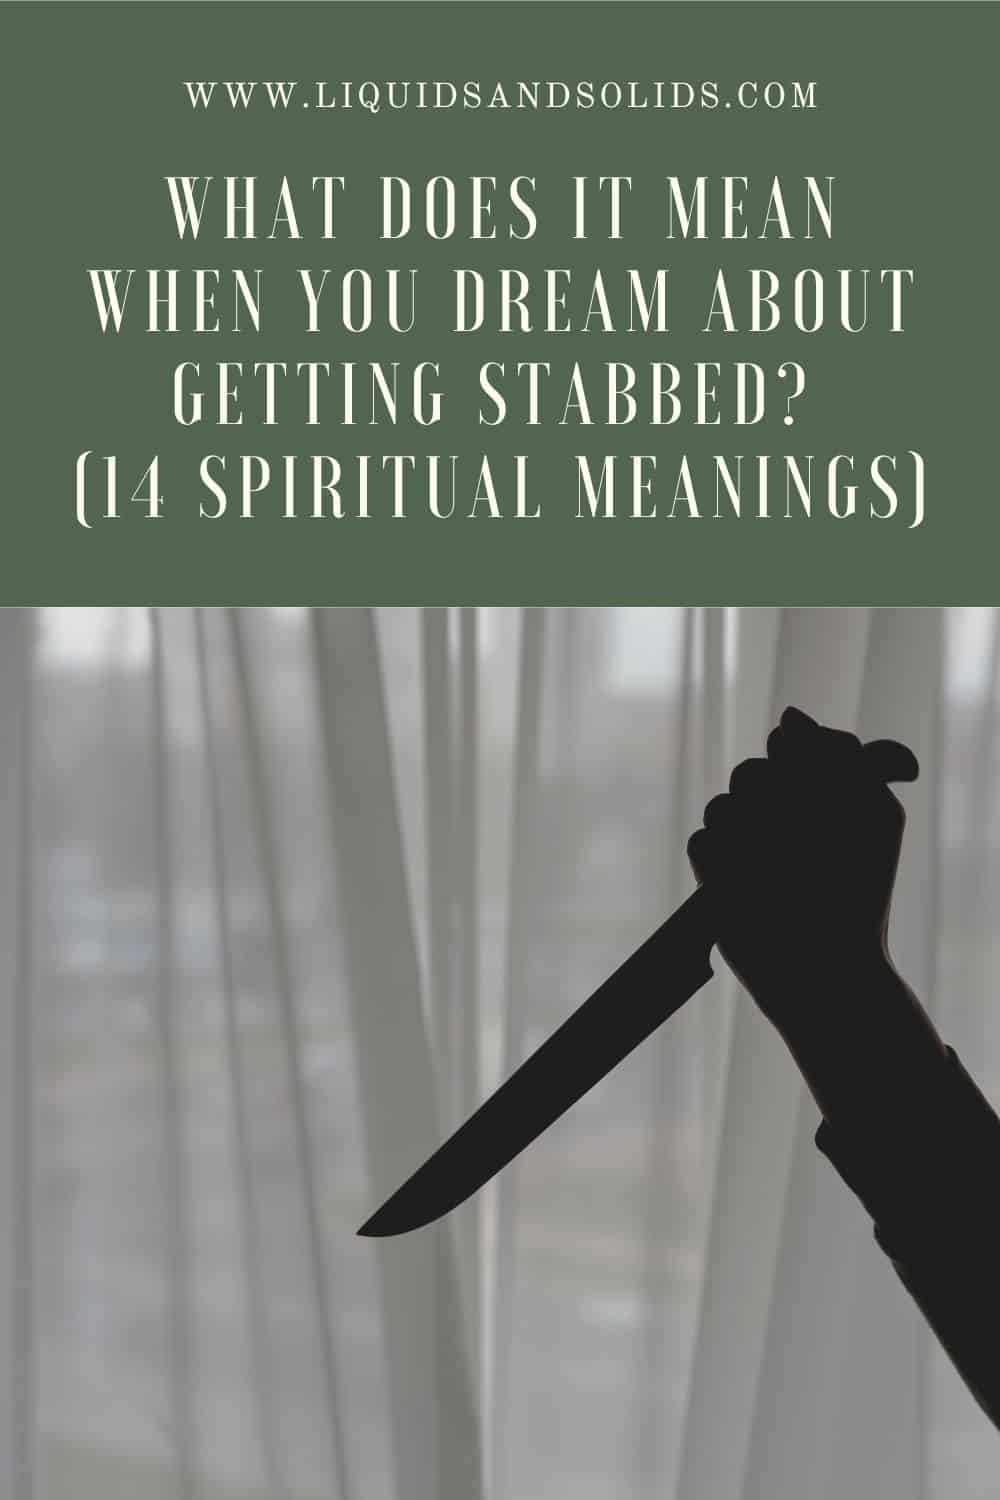  Mit jelent, ha azt álmodod, hogy leszúrnak? (14 spirituális jelentés)